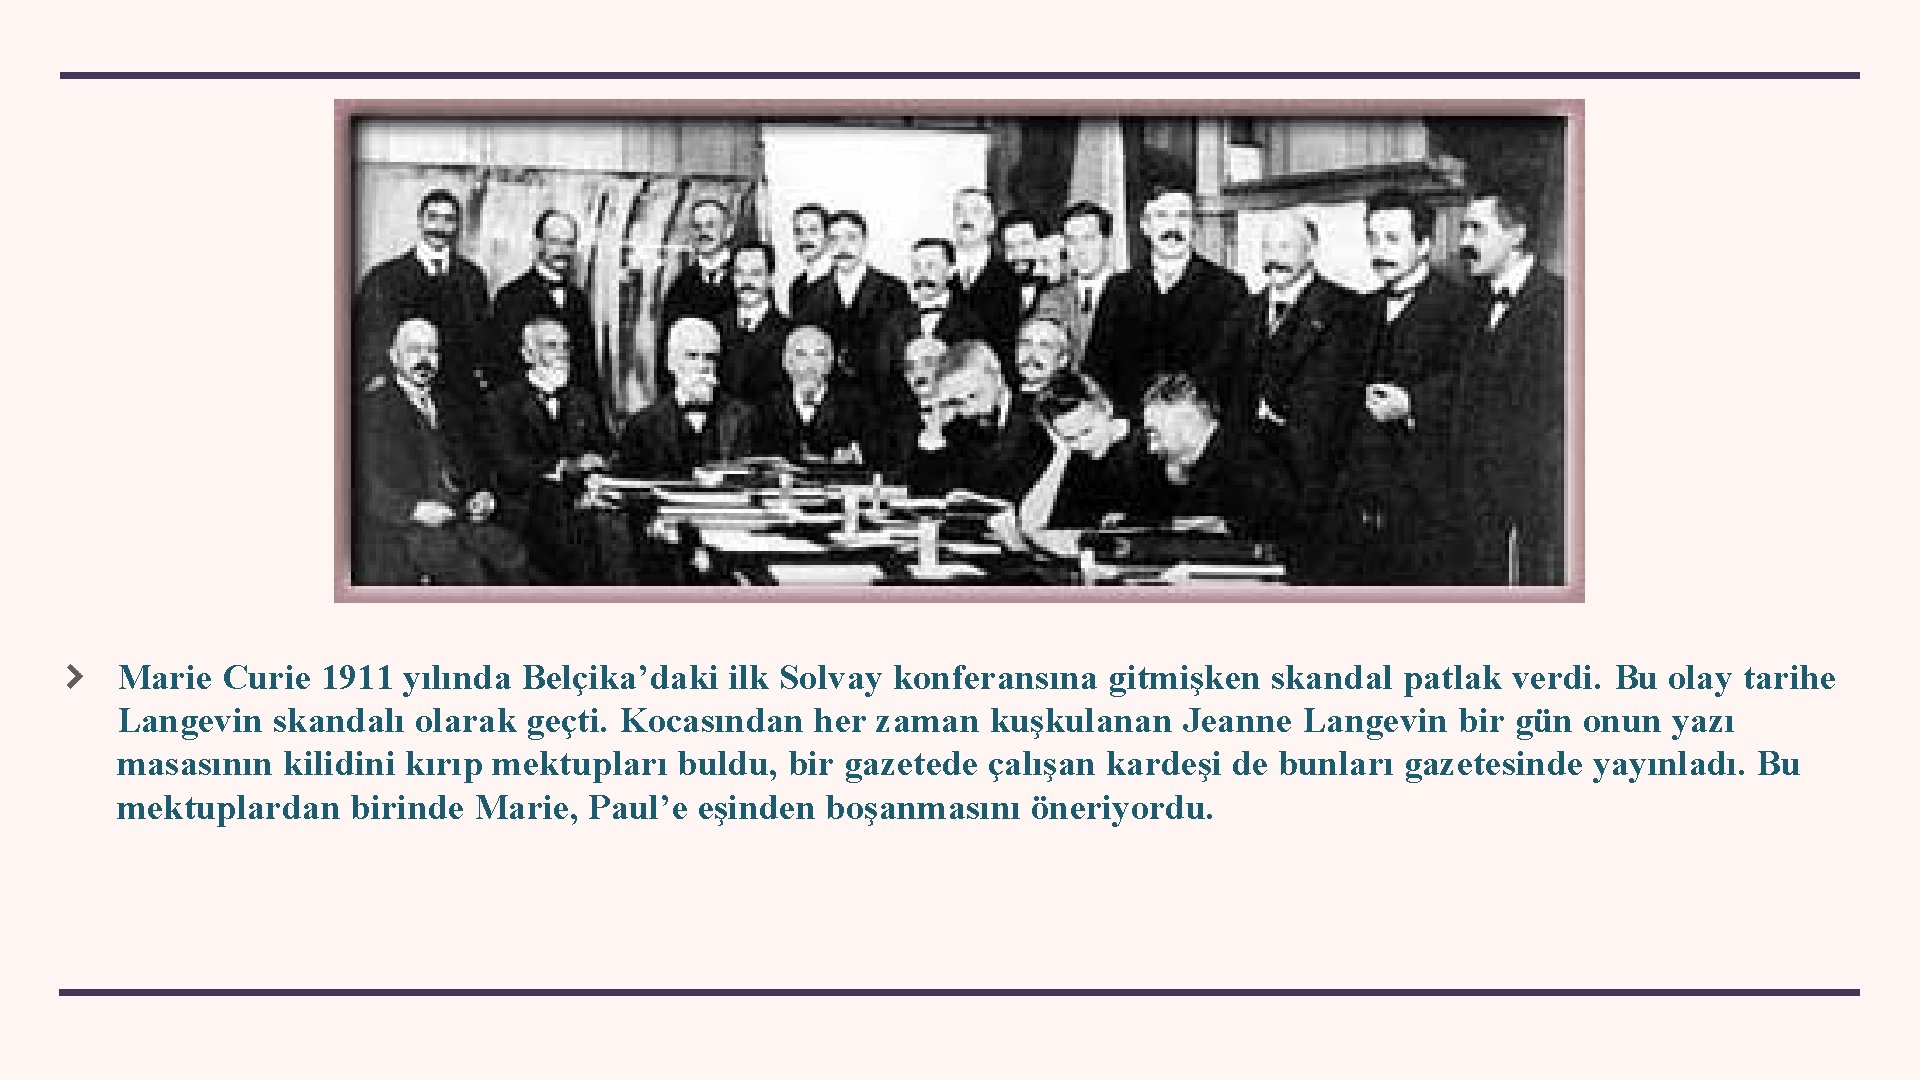 Marie Curie 1911 yılında Belçika’daki ilk Solvay konferansına gitmişken skandal patlak verdi. Bu olay